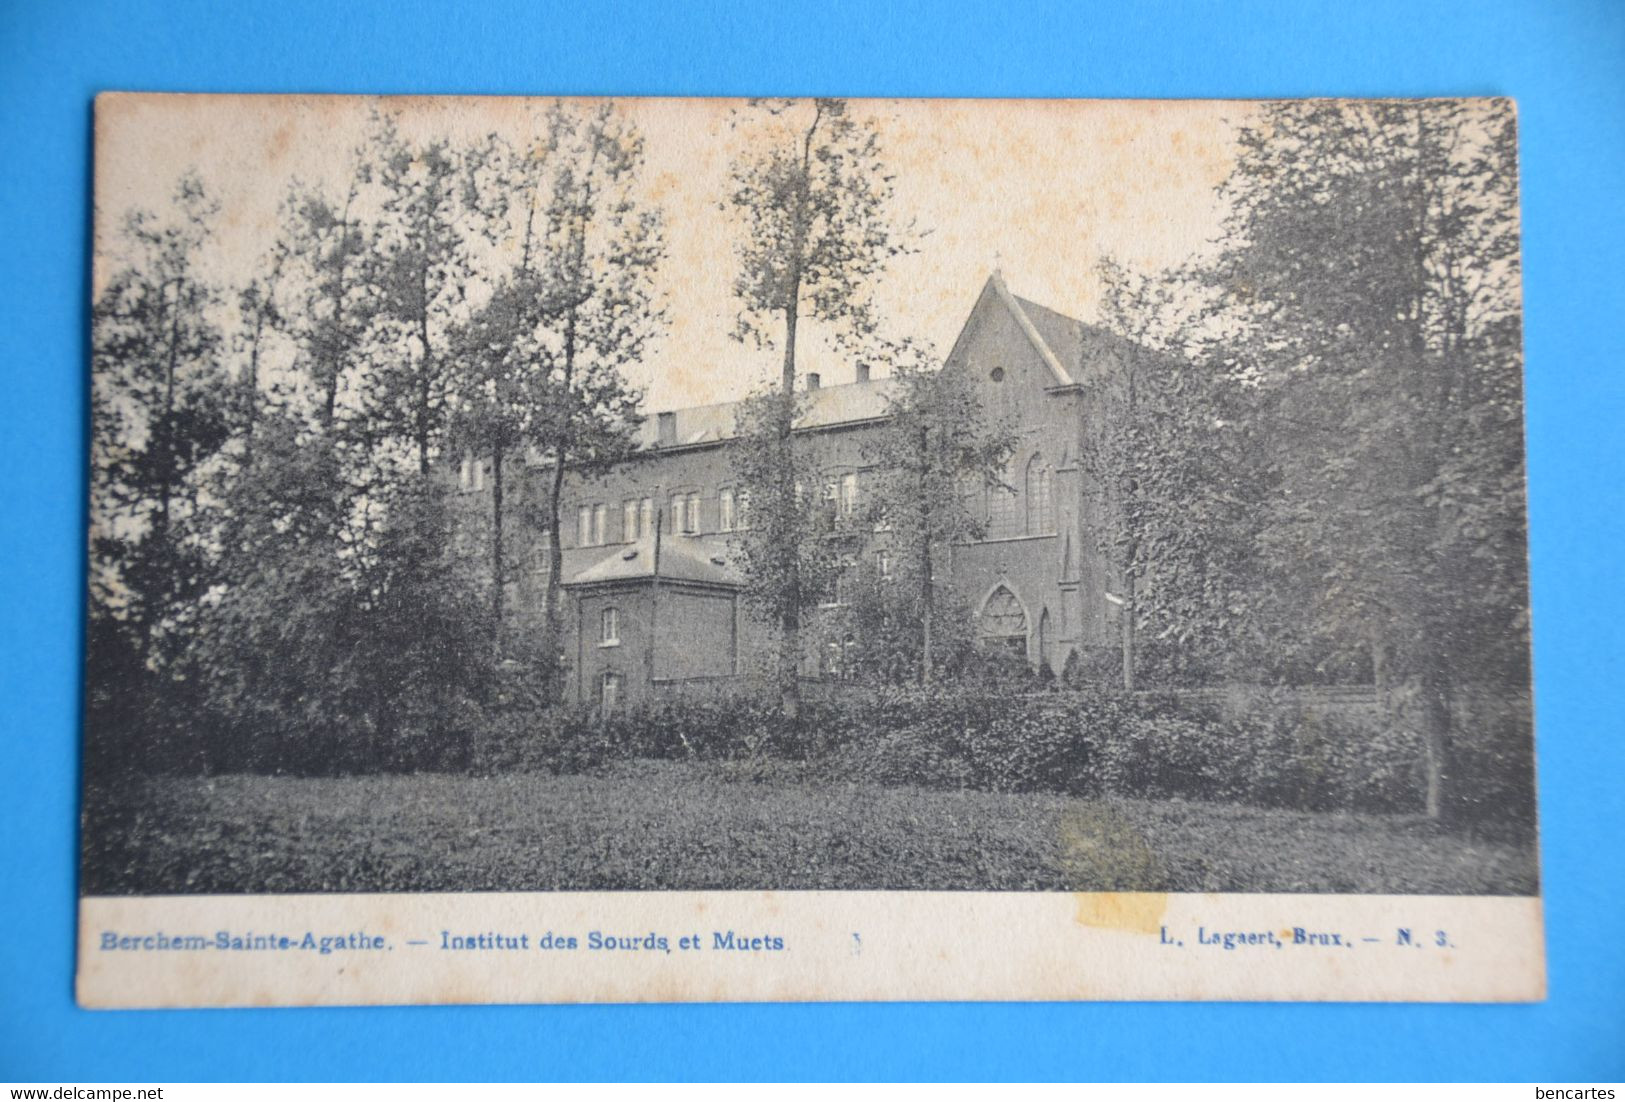 Berchem-Ste-Agathe 1900: Institut Des Sourds Et Muets - Berchem-Ste-Agathe - St-Agatha-Berchem